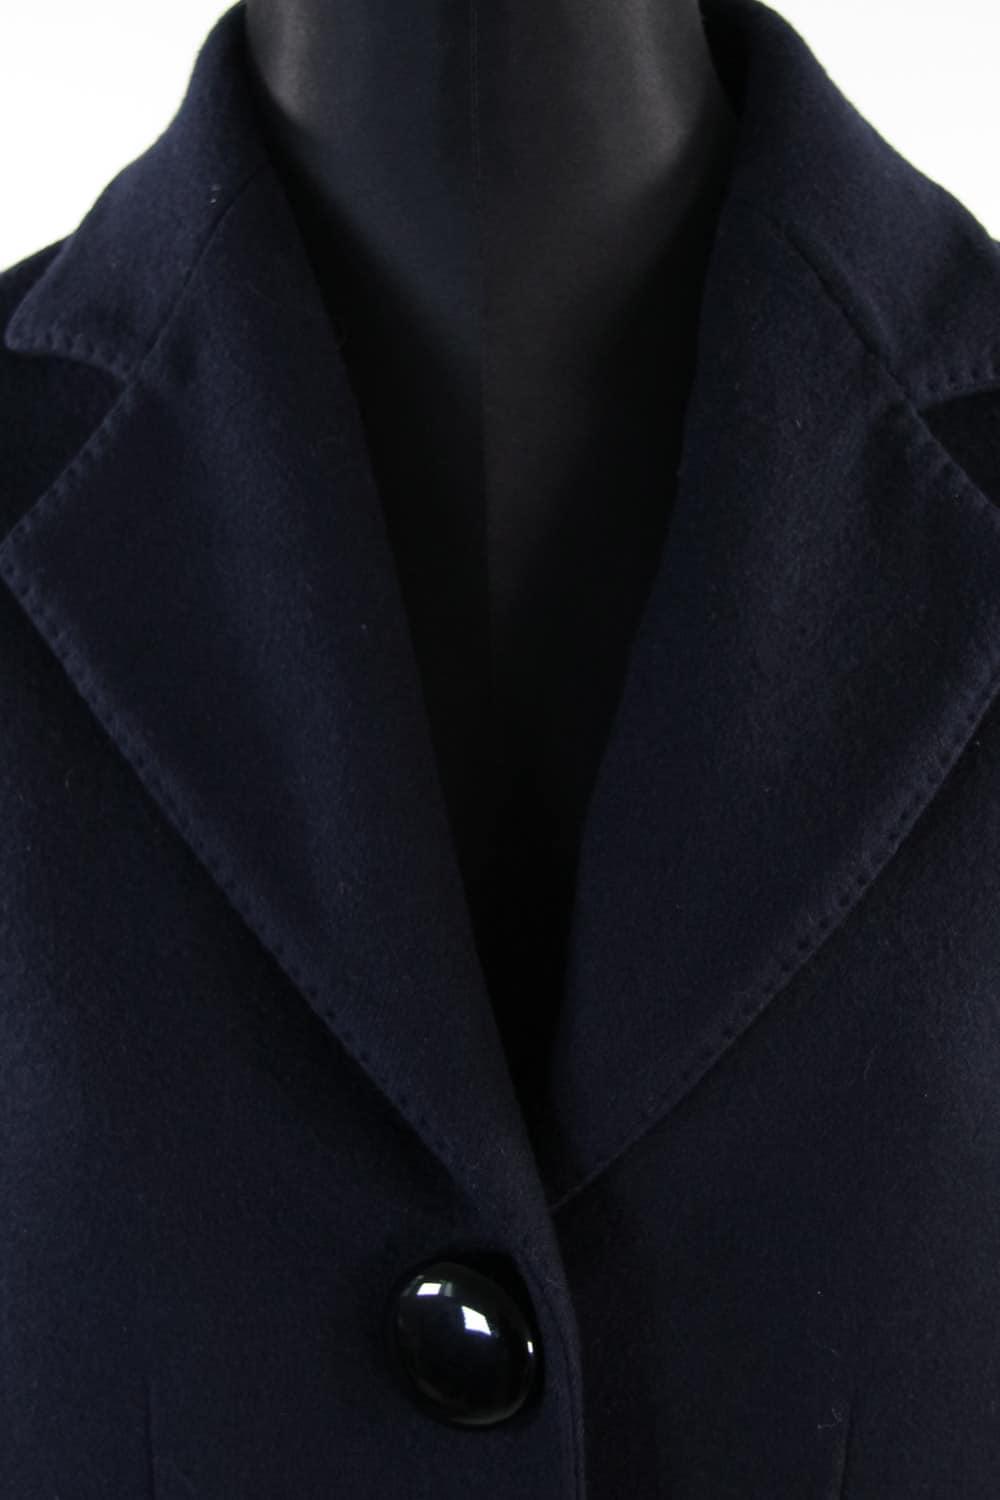 Manteaux Louis Vuitton de seconde main pour Femme